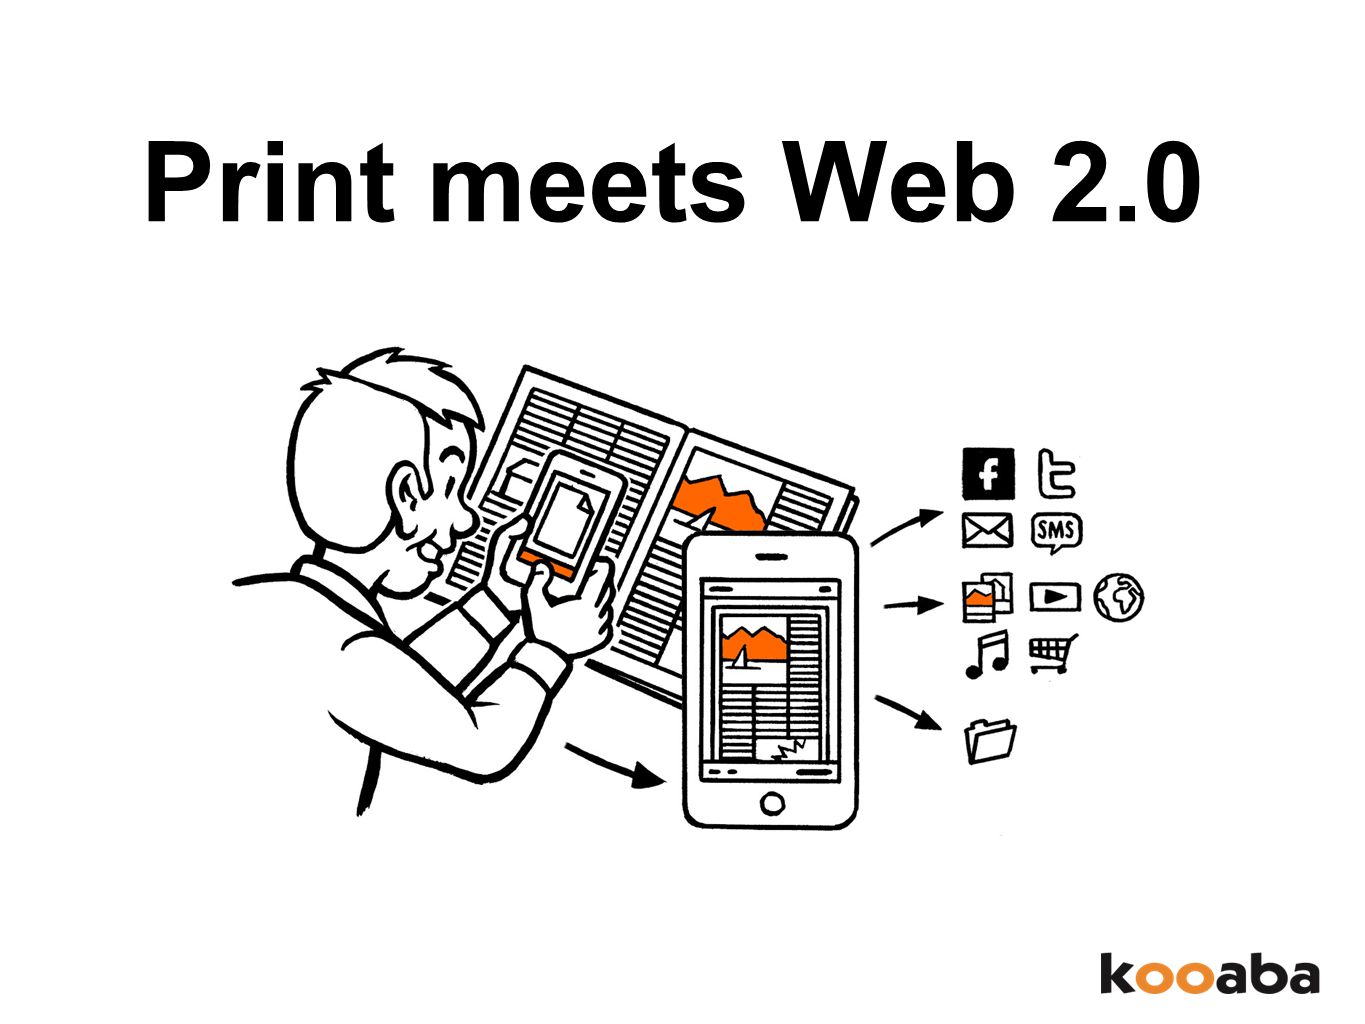 Print meets Web 2.0